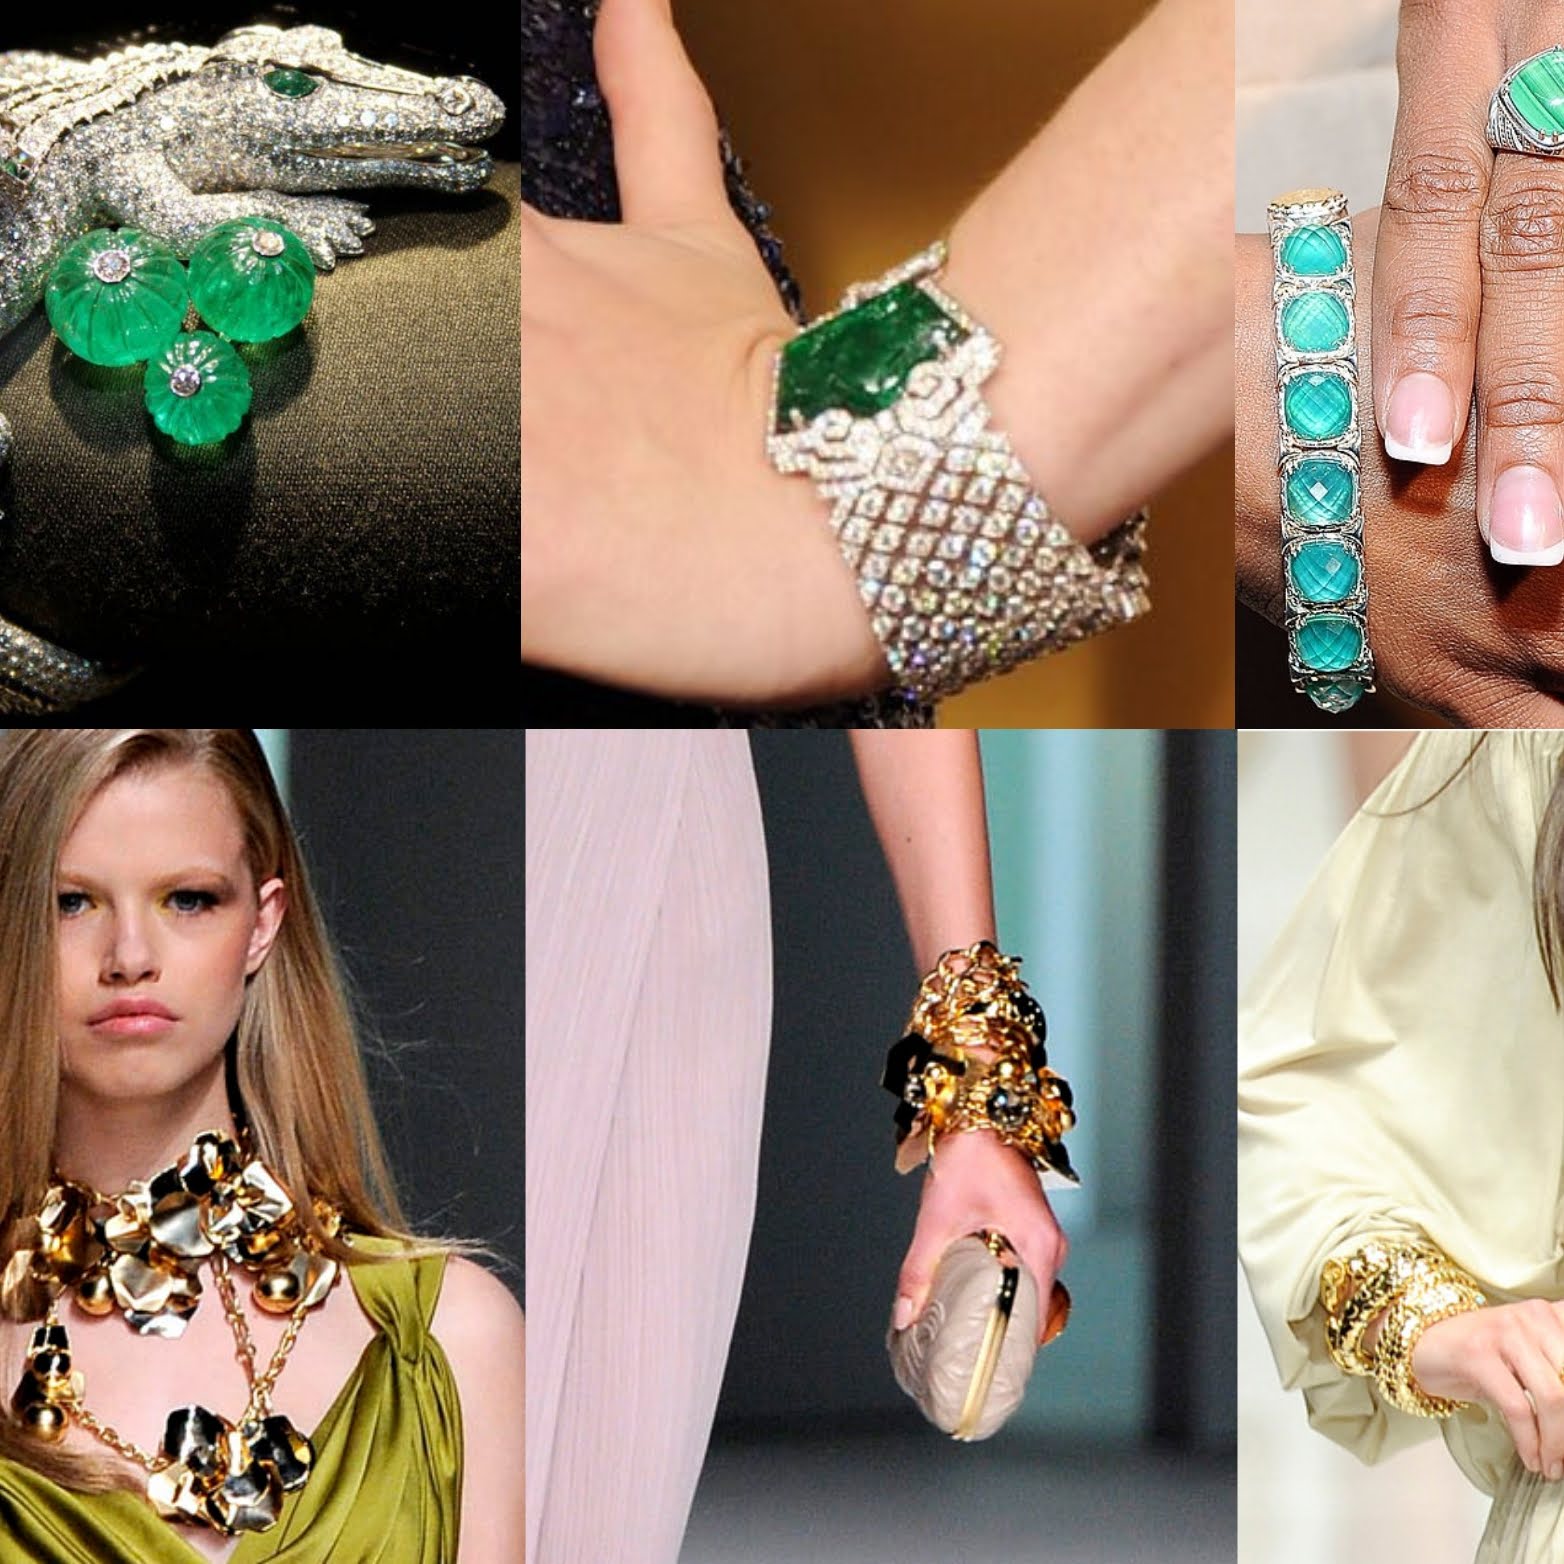 Тенденции ювелирной моды 2010-х годов: что будут носить?